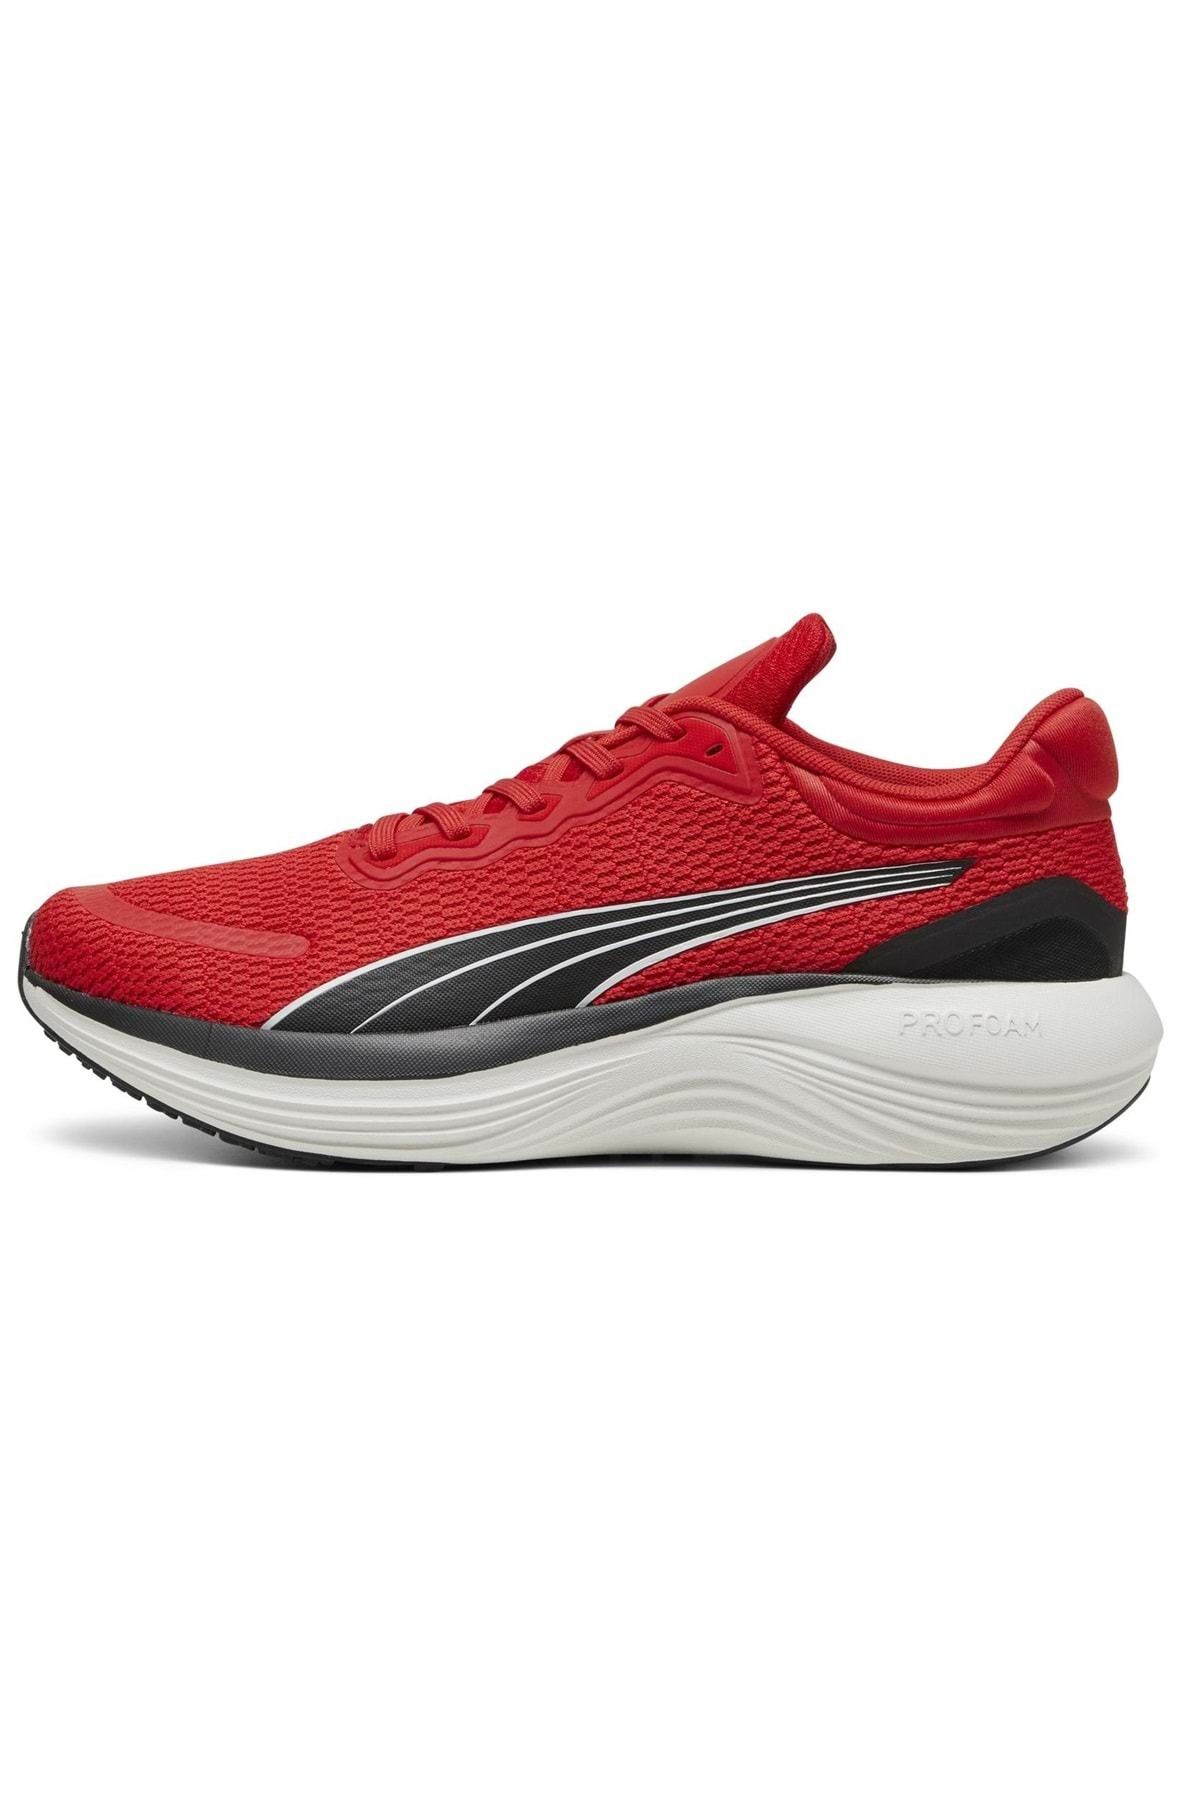 Puma 378776 Scend Pro Koşu Unisex Spor Ayakkabı Kırmızı